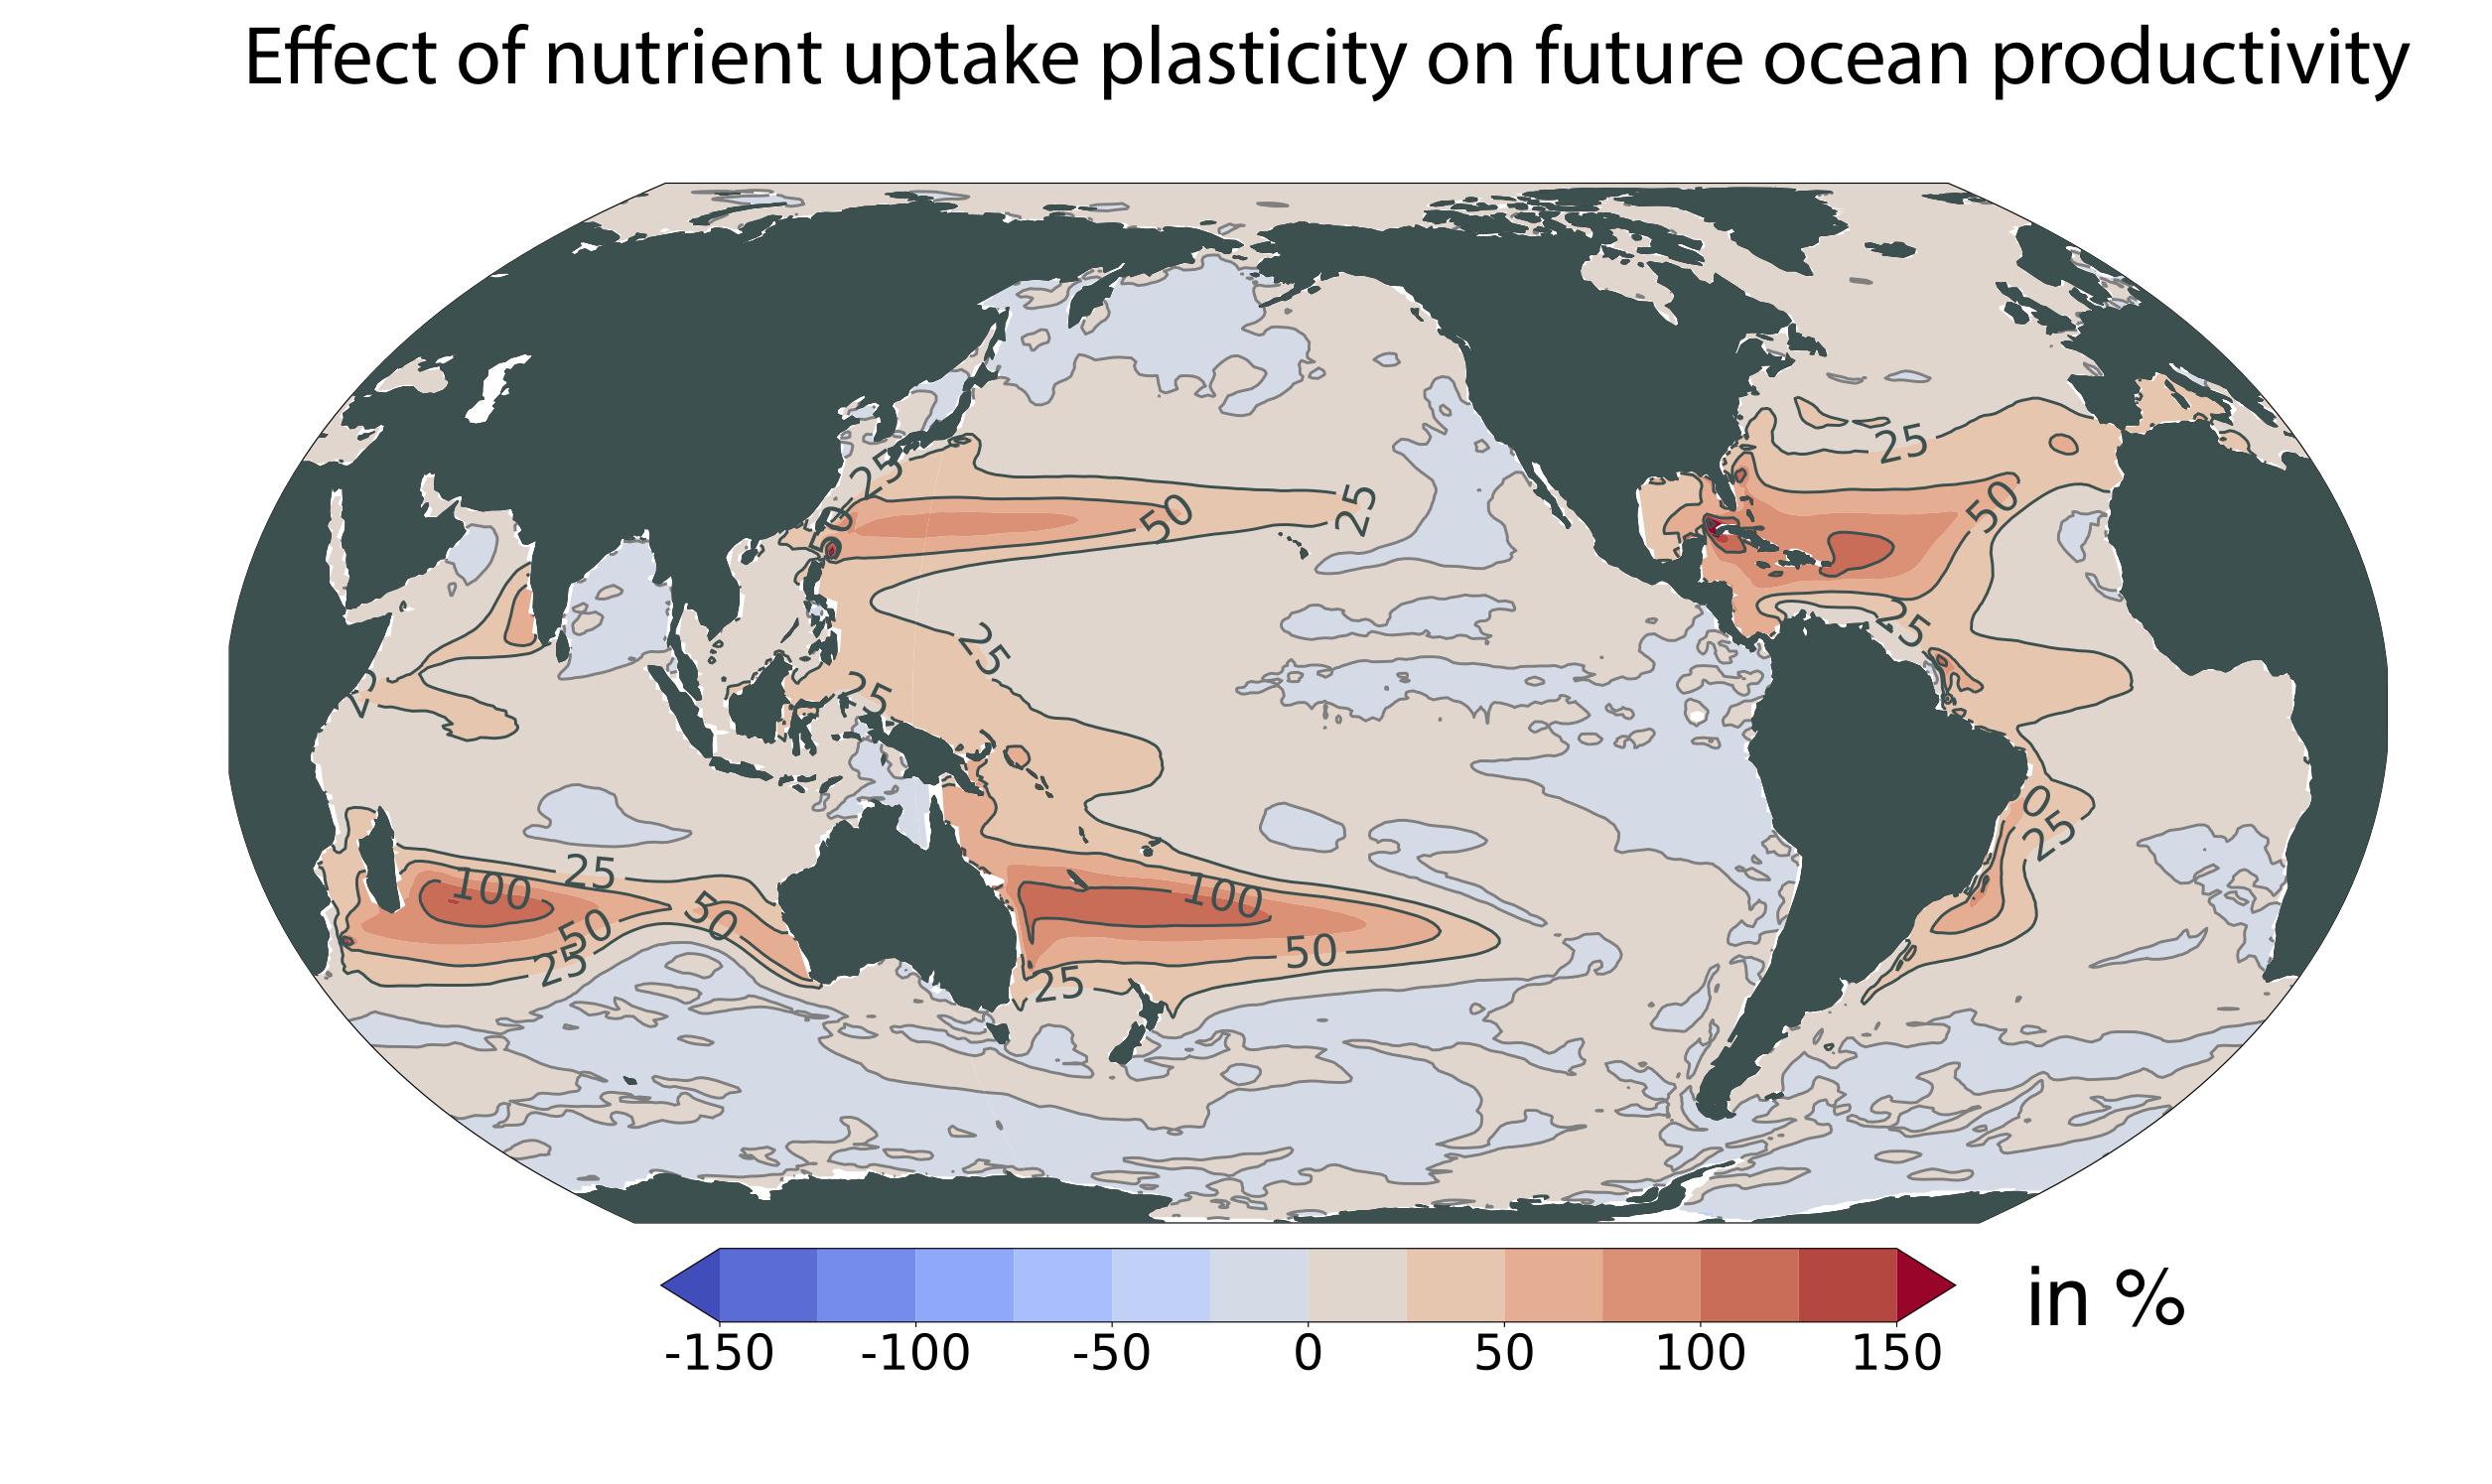 [그림 3] 식물 플랑크톤의 영양 흡수 조절 능력이 미래 해양 순생산량에 미치는 영향
            미래(2080~2100년 평균) 식물 플랑크톤의 영양 흡수 조절 능력을 고려하지 않은 기존 전망과 고려한 전망의 차이를 보여준다. 색이 붉을수록 고려했을 때의 생산성이 고려하지 않았을 때에 비해 높다는 것을 나타낸다. 